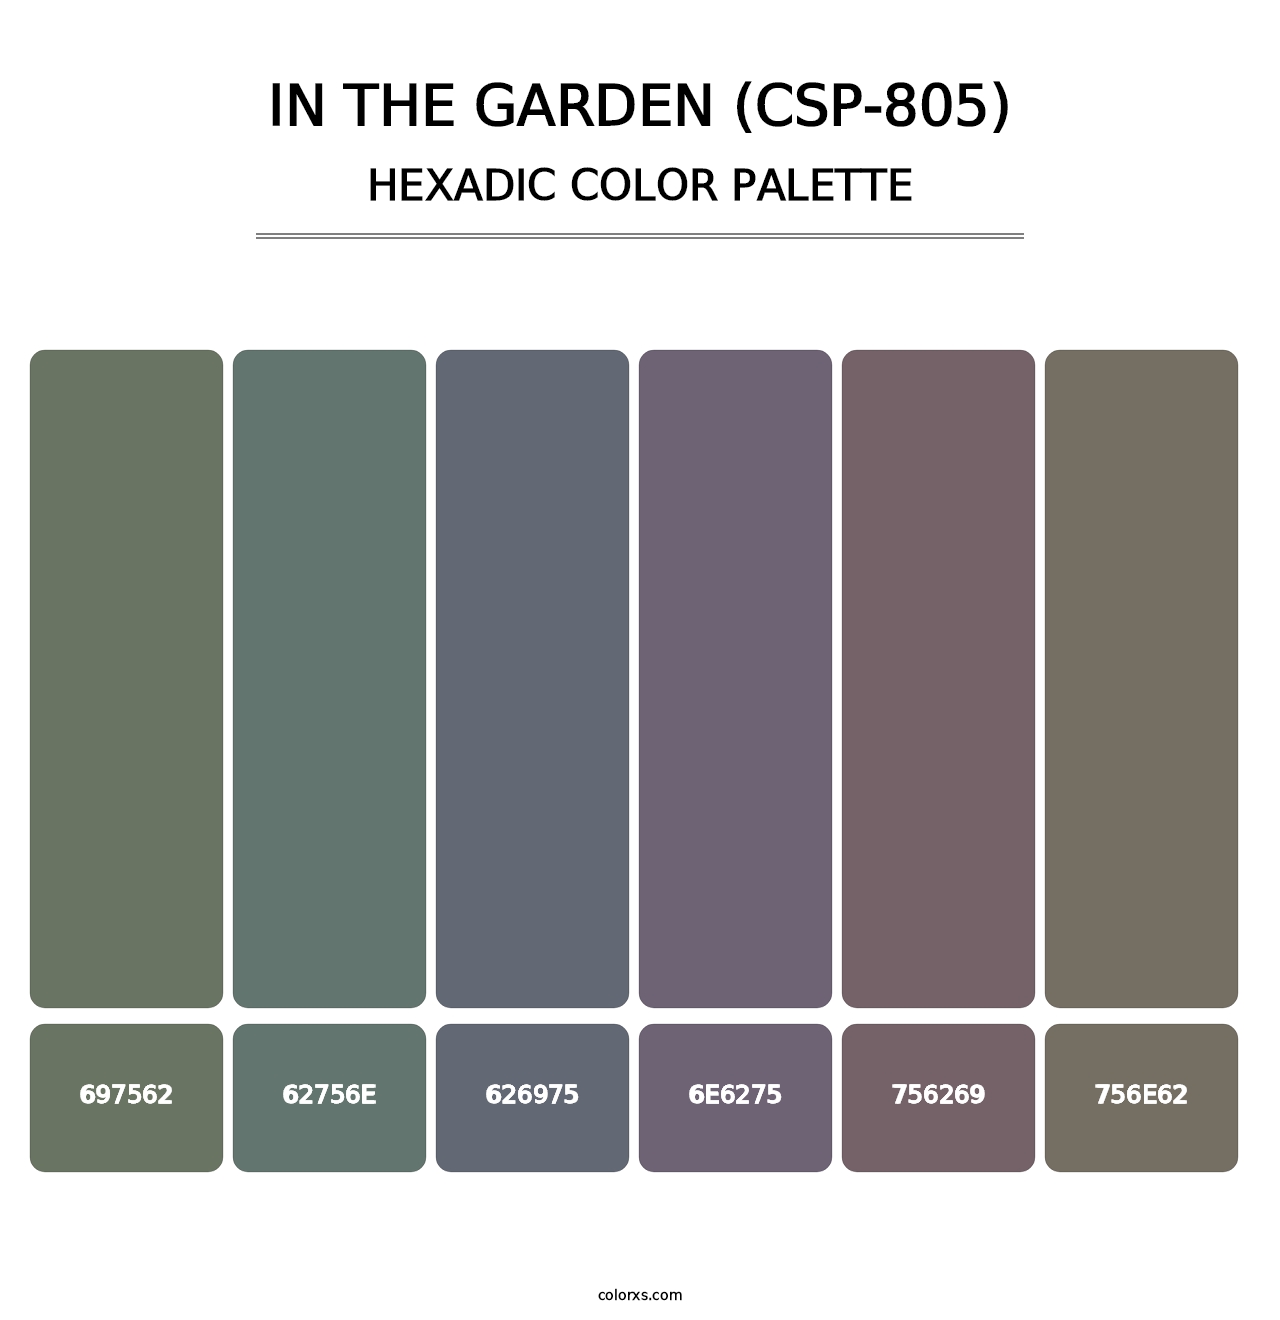 In the Garden (CSP-805) - Hexadic Color Palette